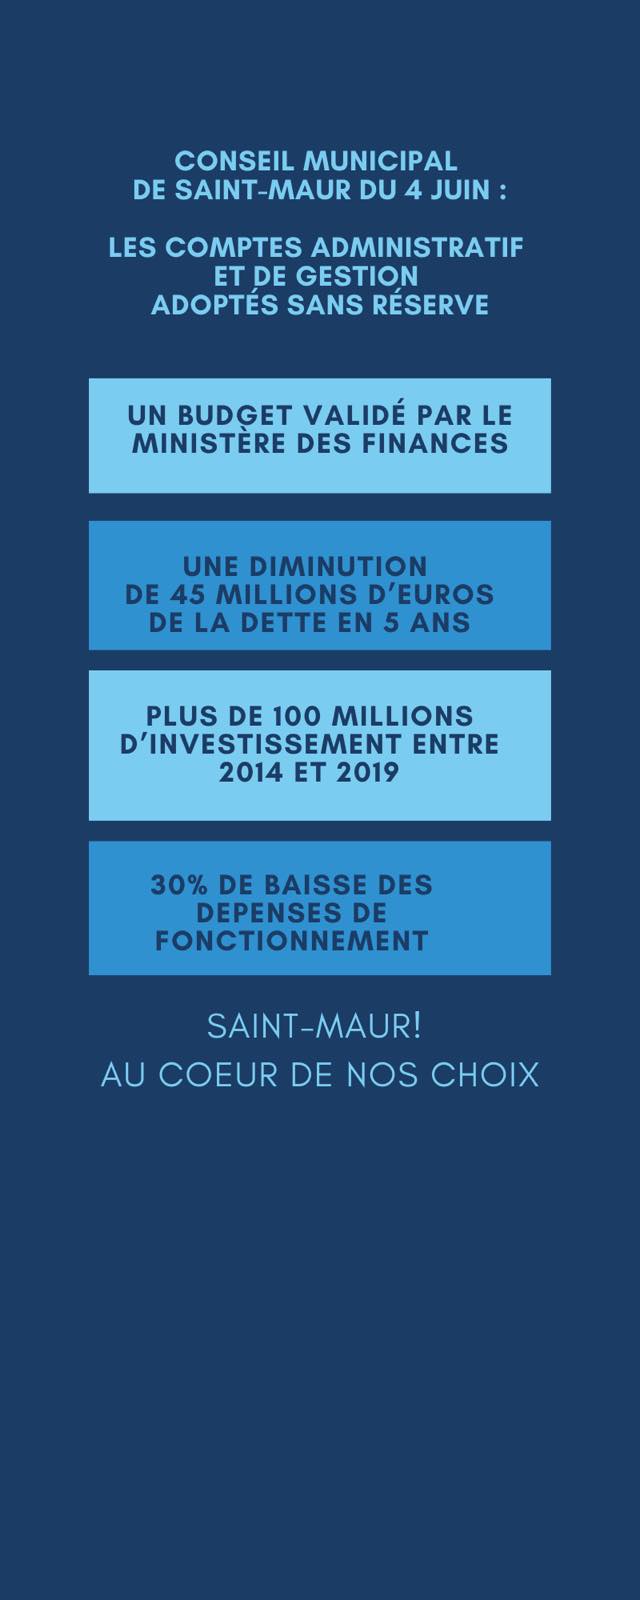 Un déficit budgétaire en baisse pour Saint-Maur